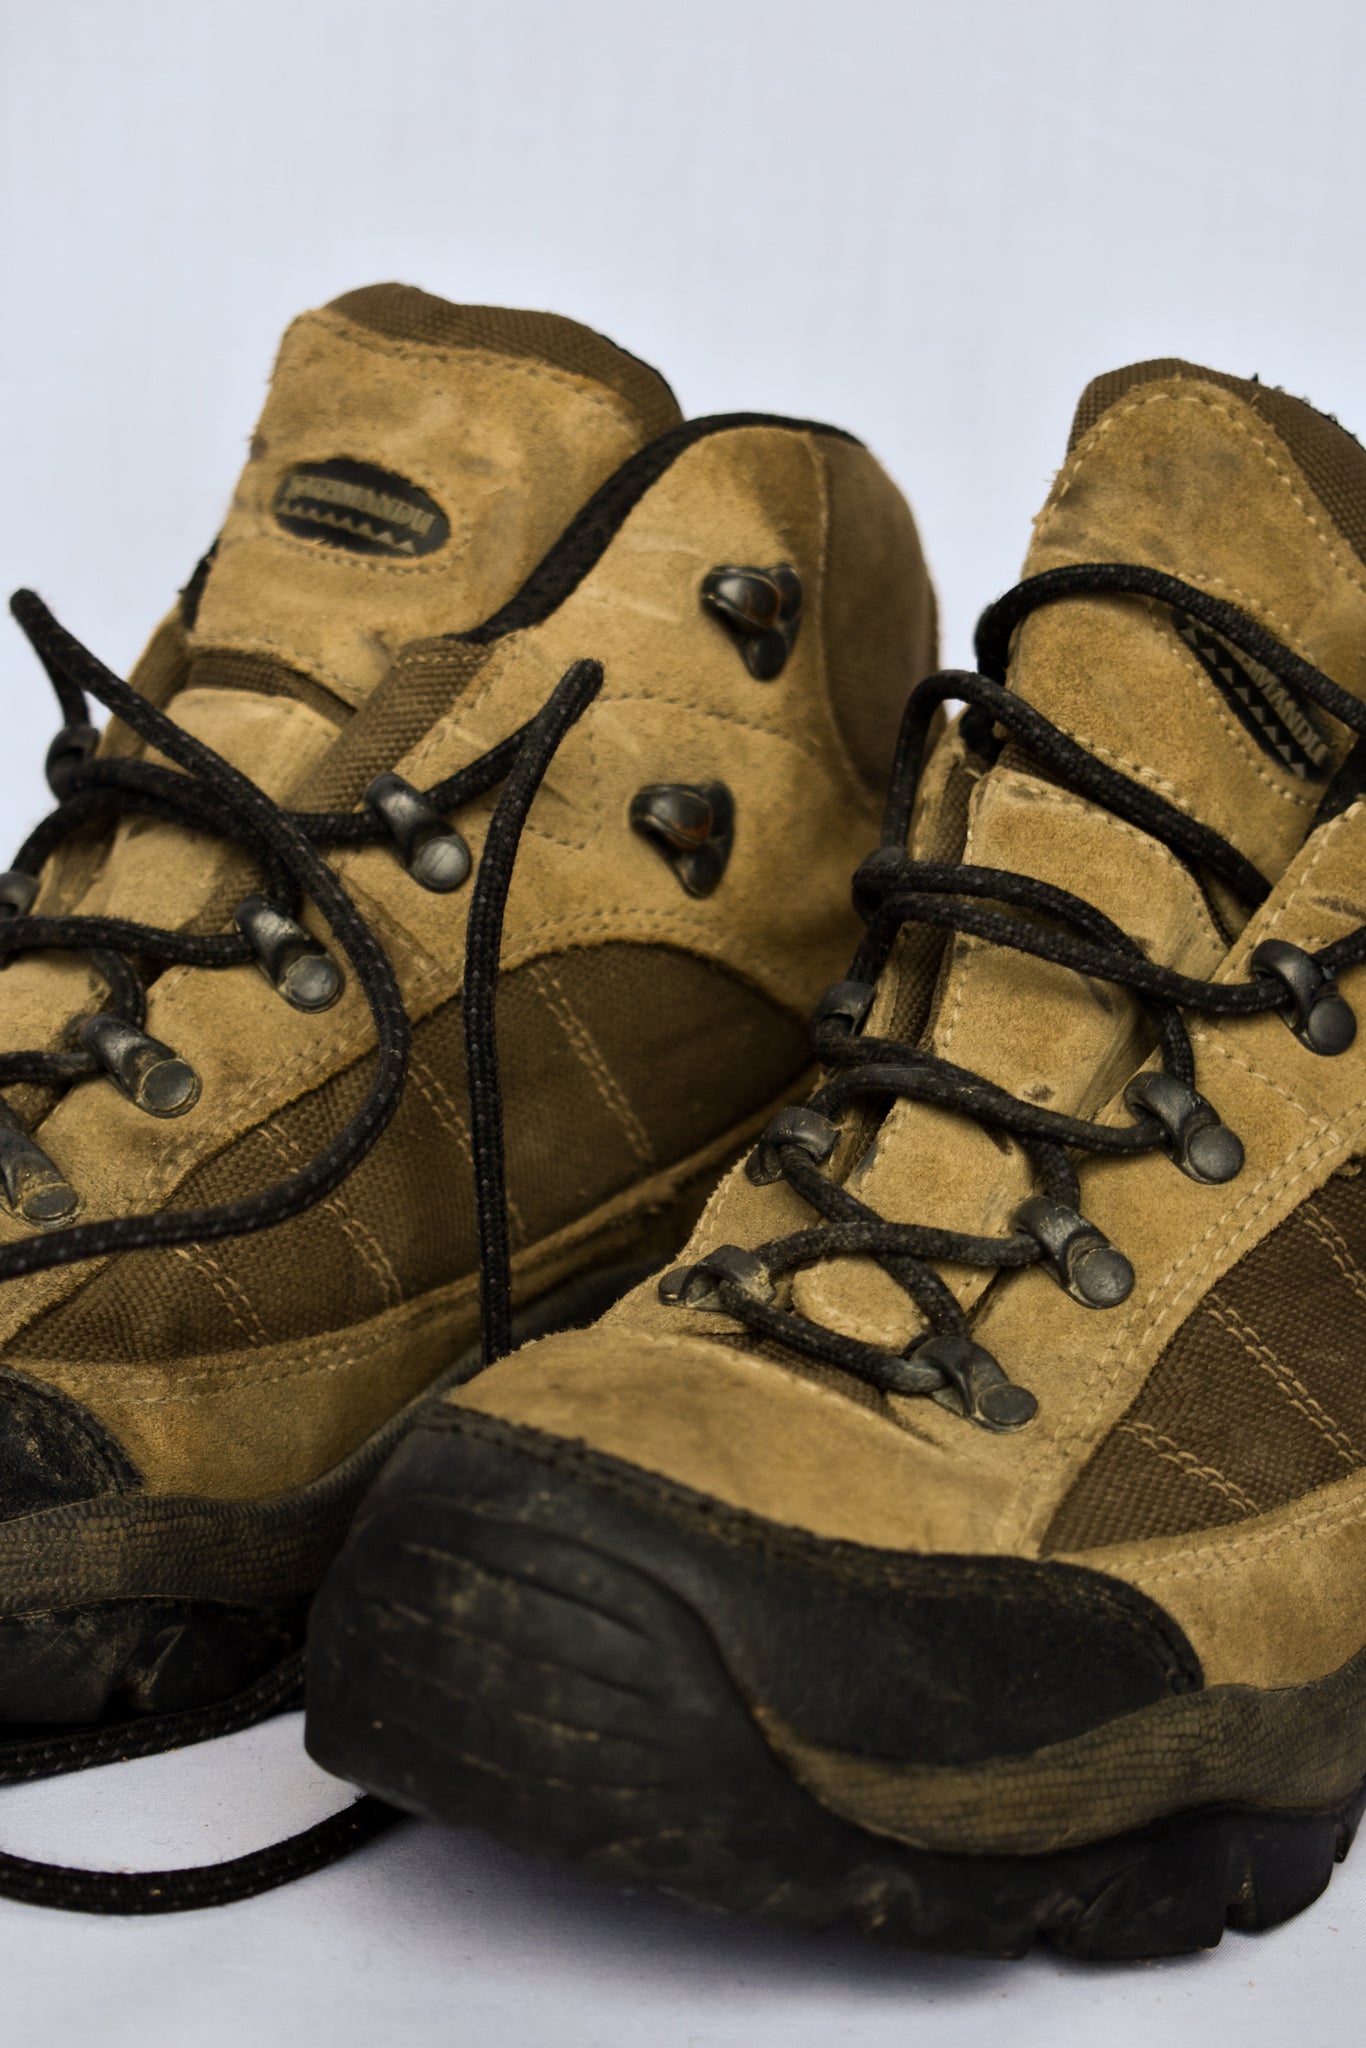 Kathmandu tramping boots, size UK 7 